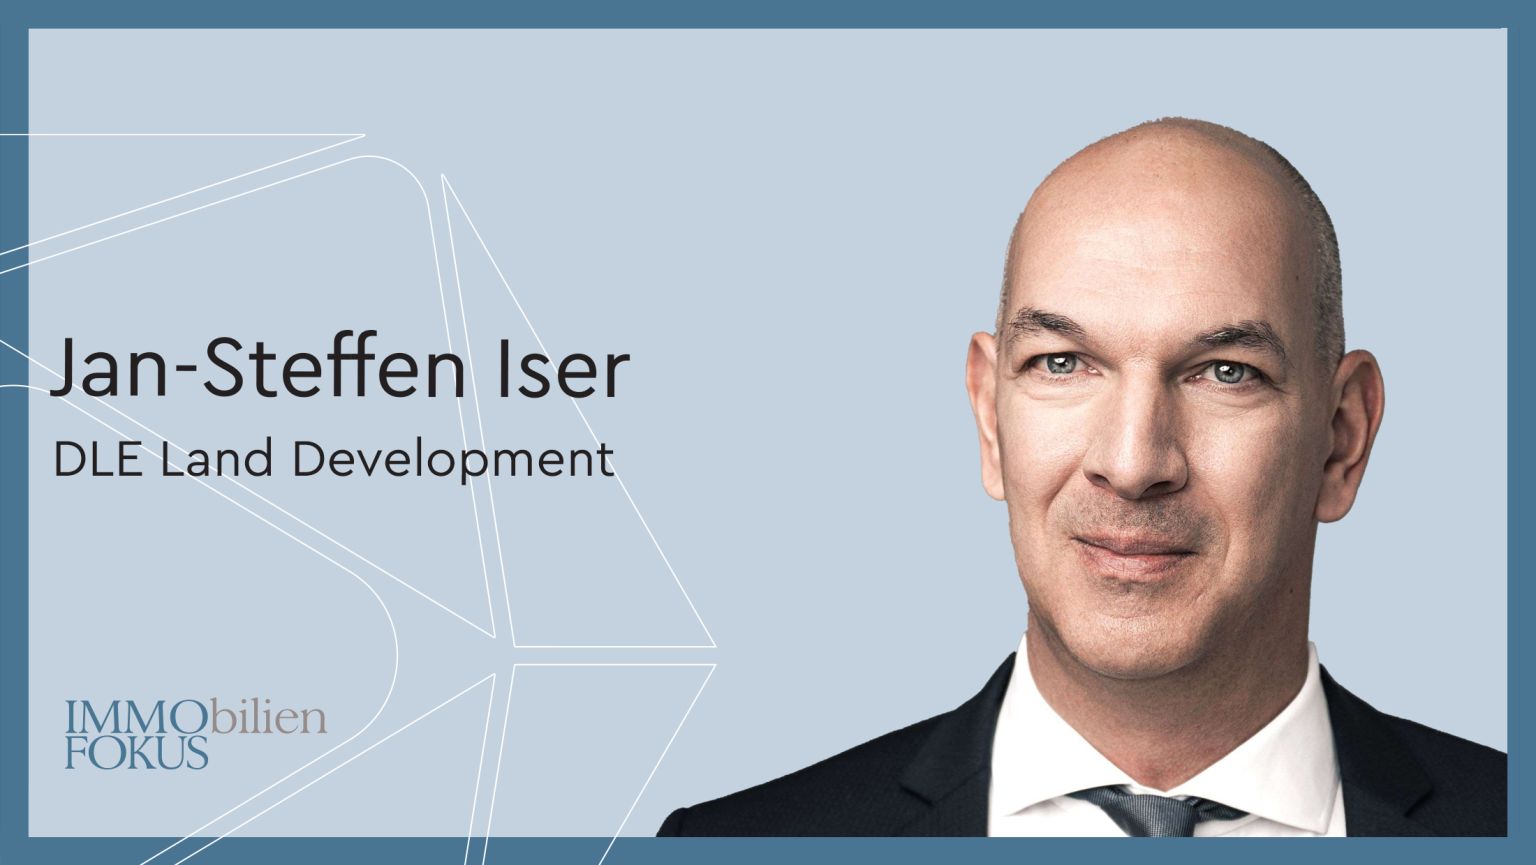 Jan-Steffen Iser